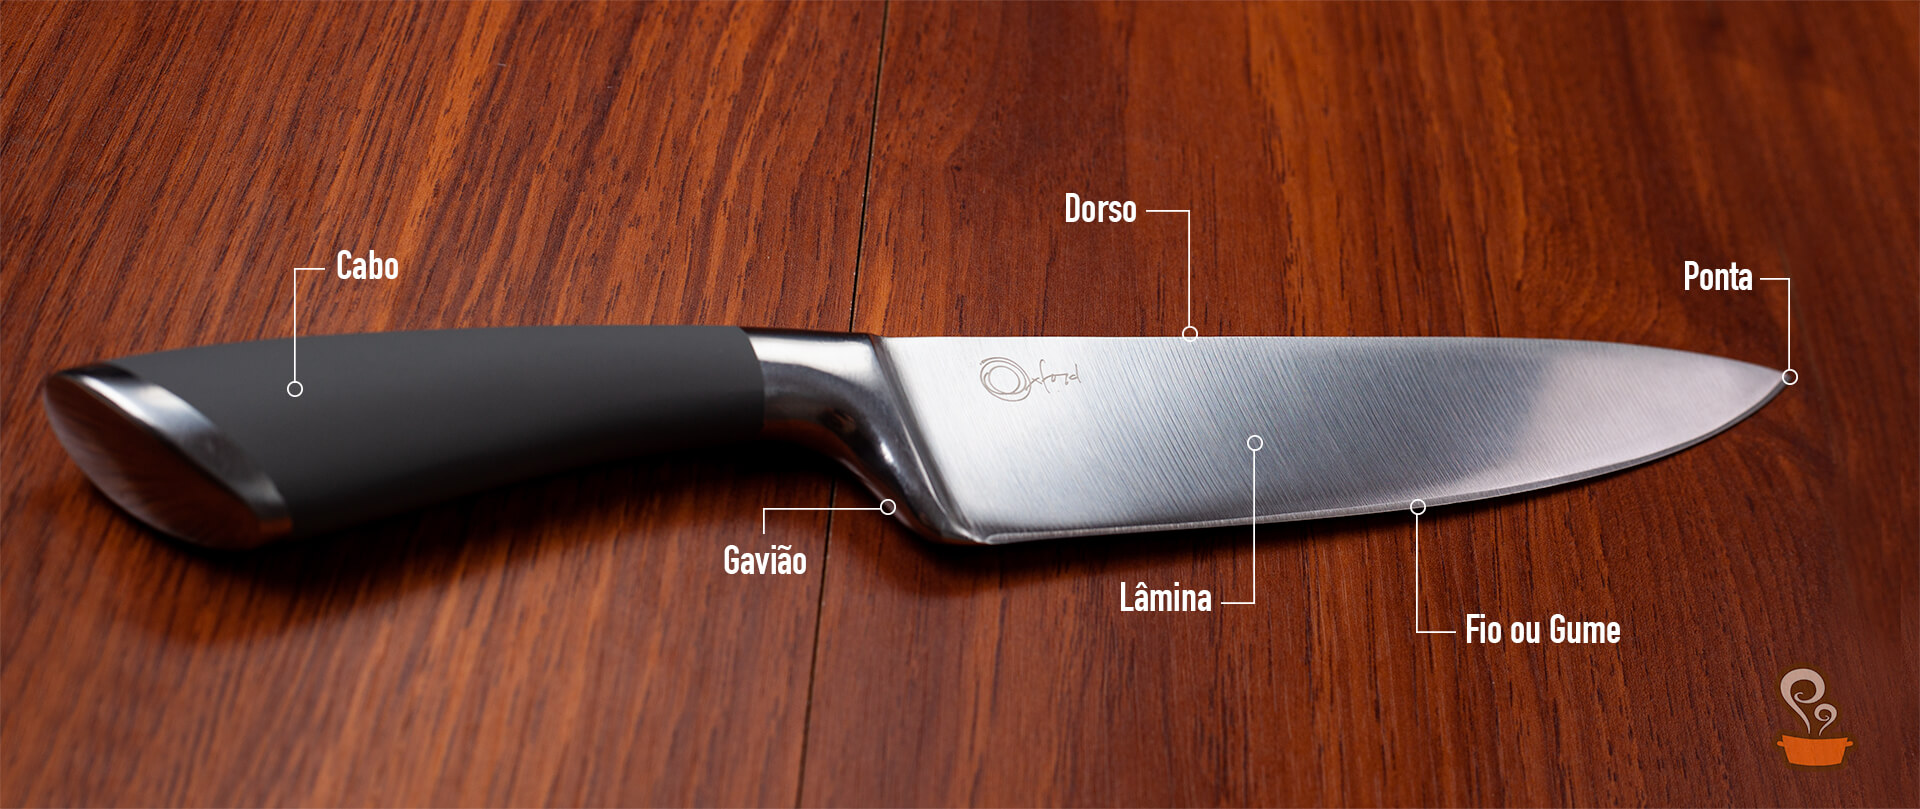 Tipos de facas - foto: naminhapanela.com